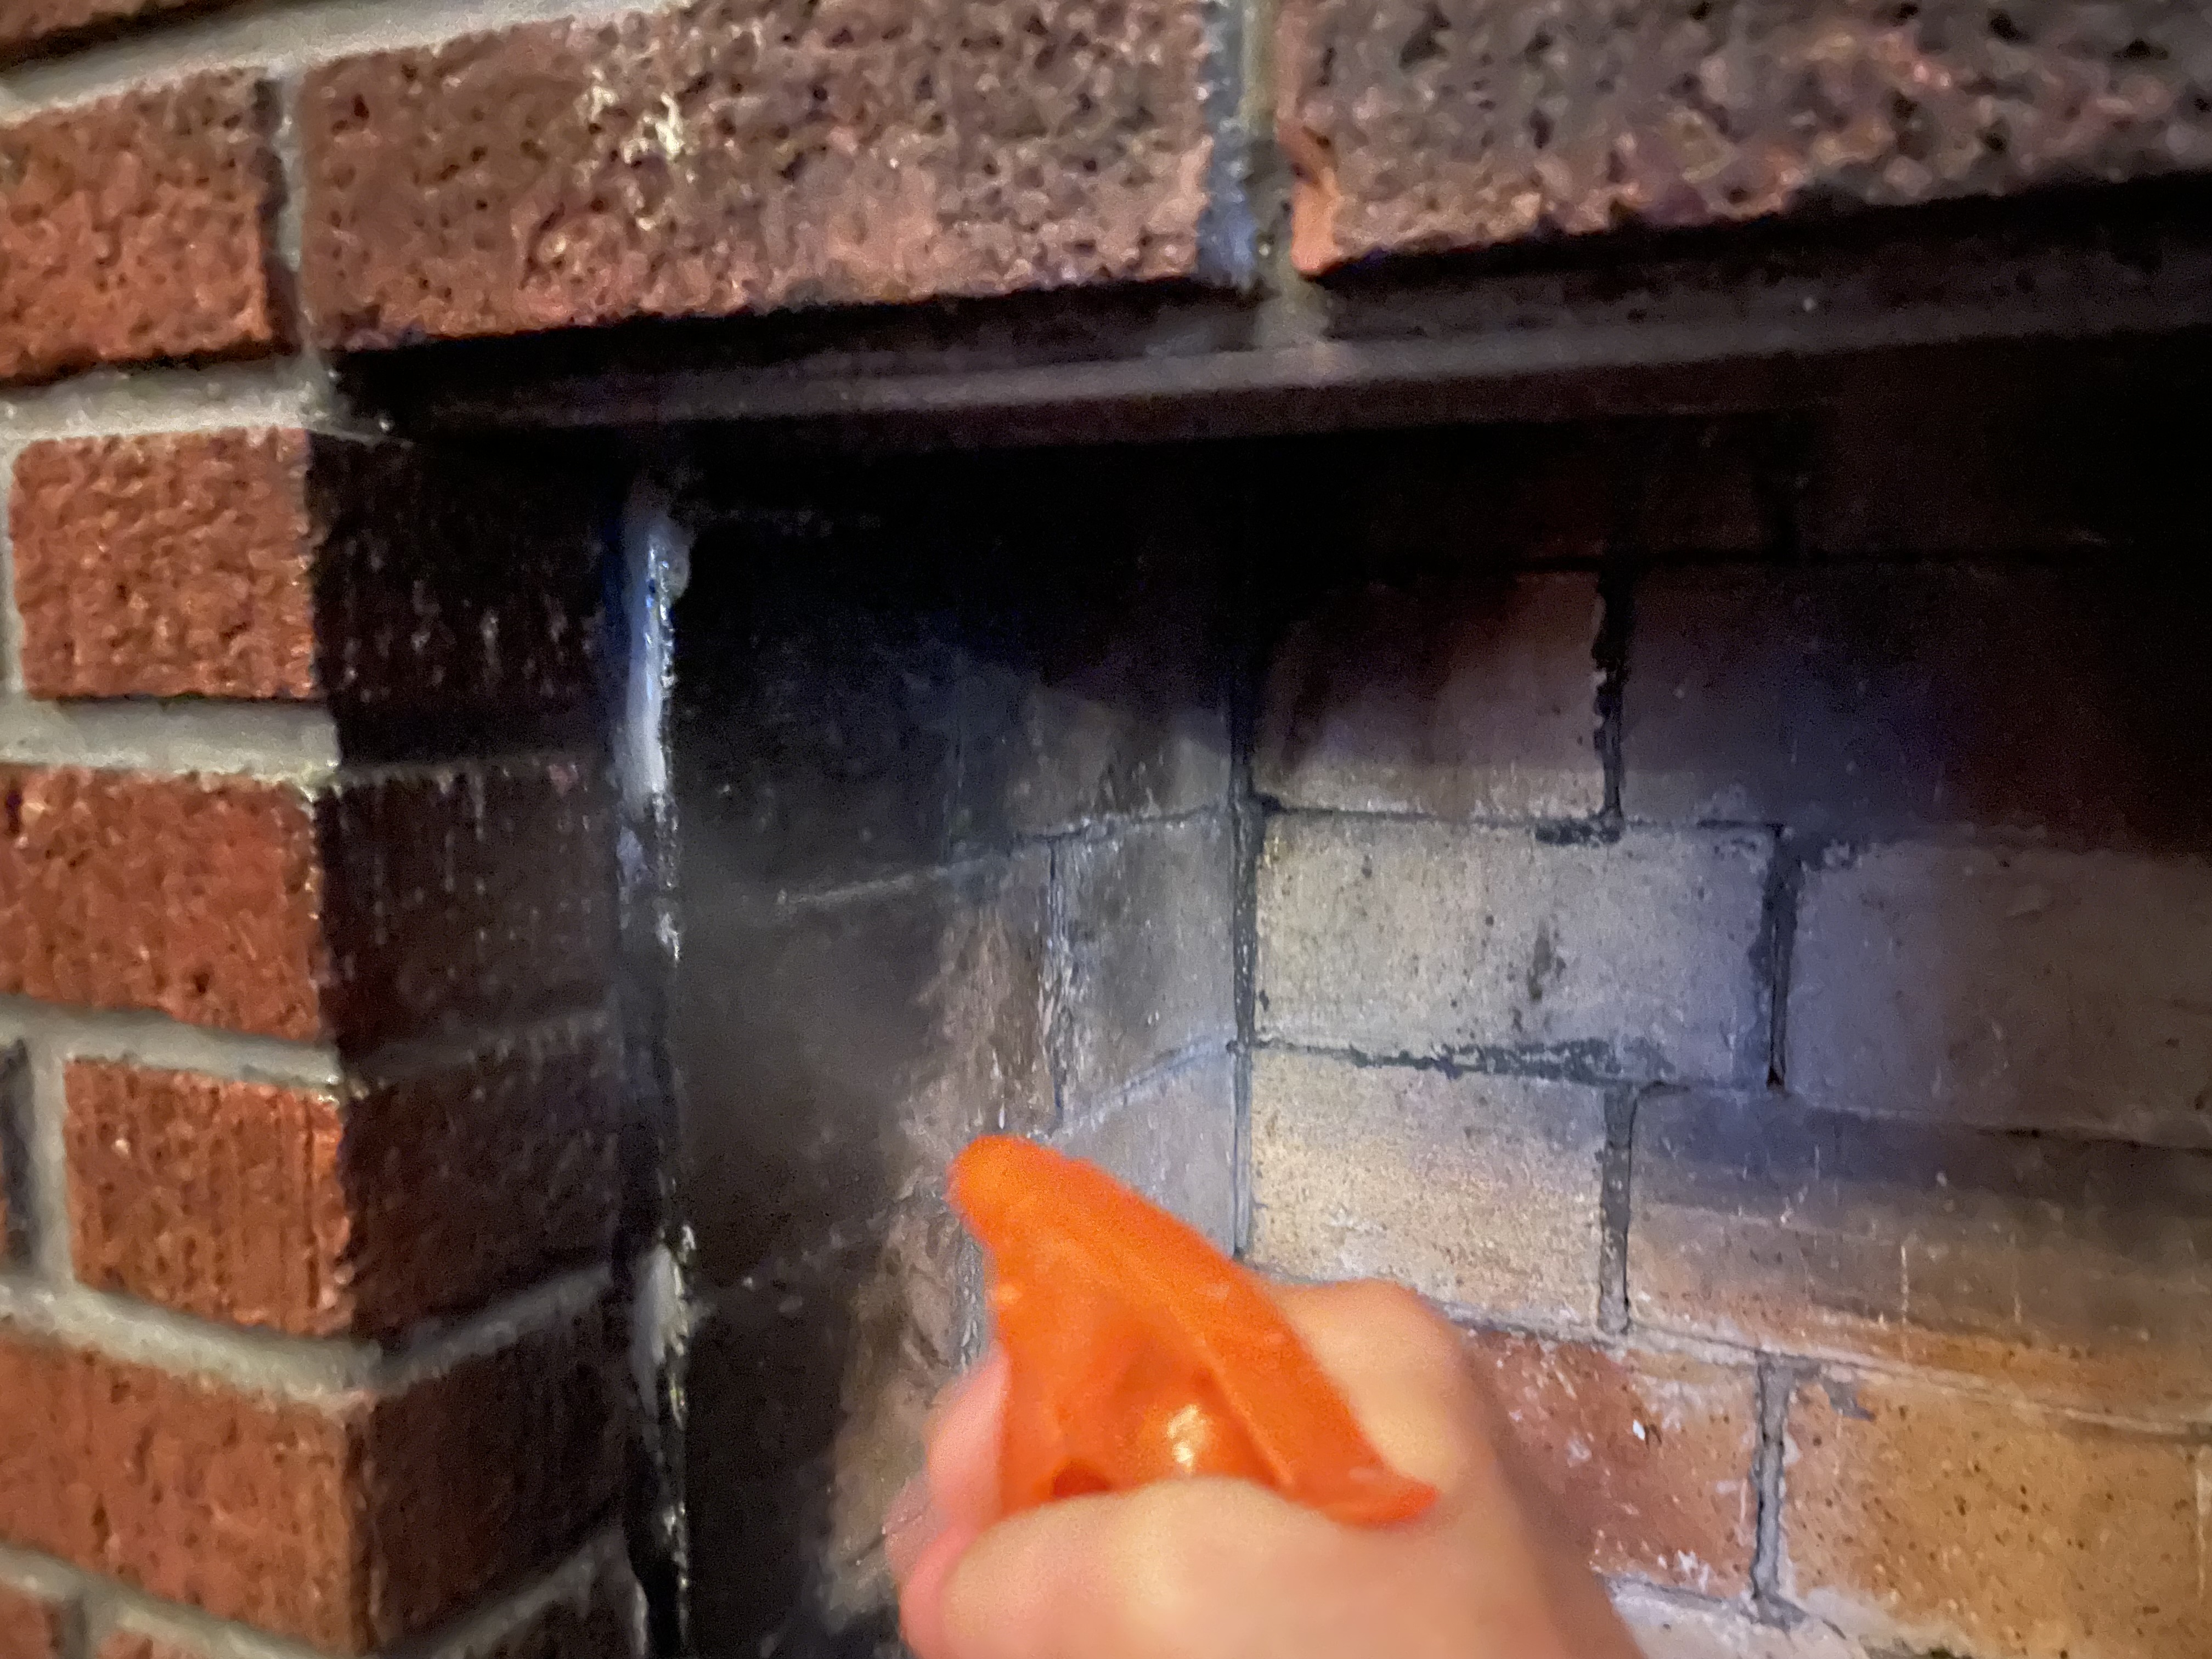 spraying the fireplace bricks to saturate them